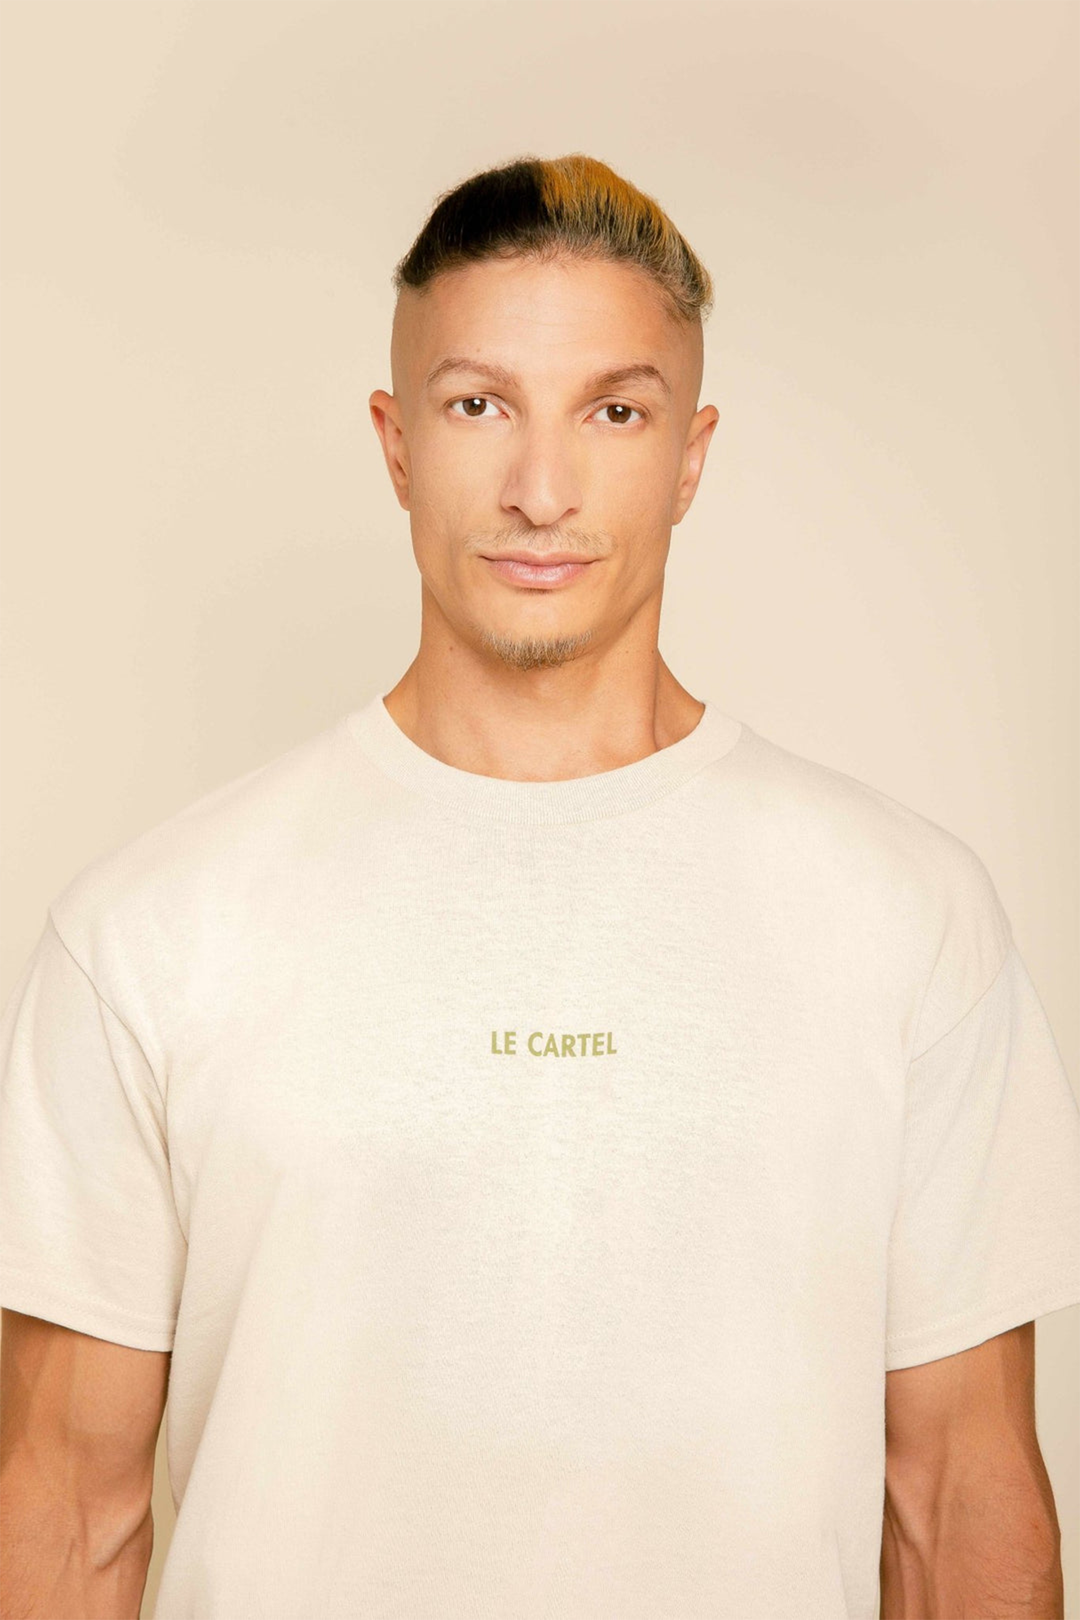 COLLÉ-SERRÉ・Unisex T-shirt・Sand